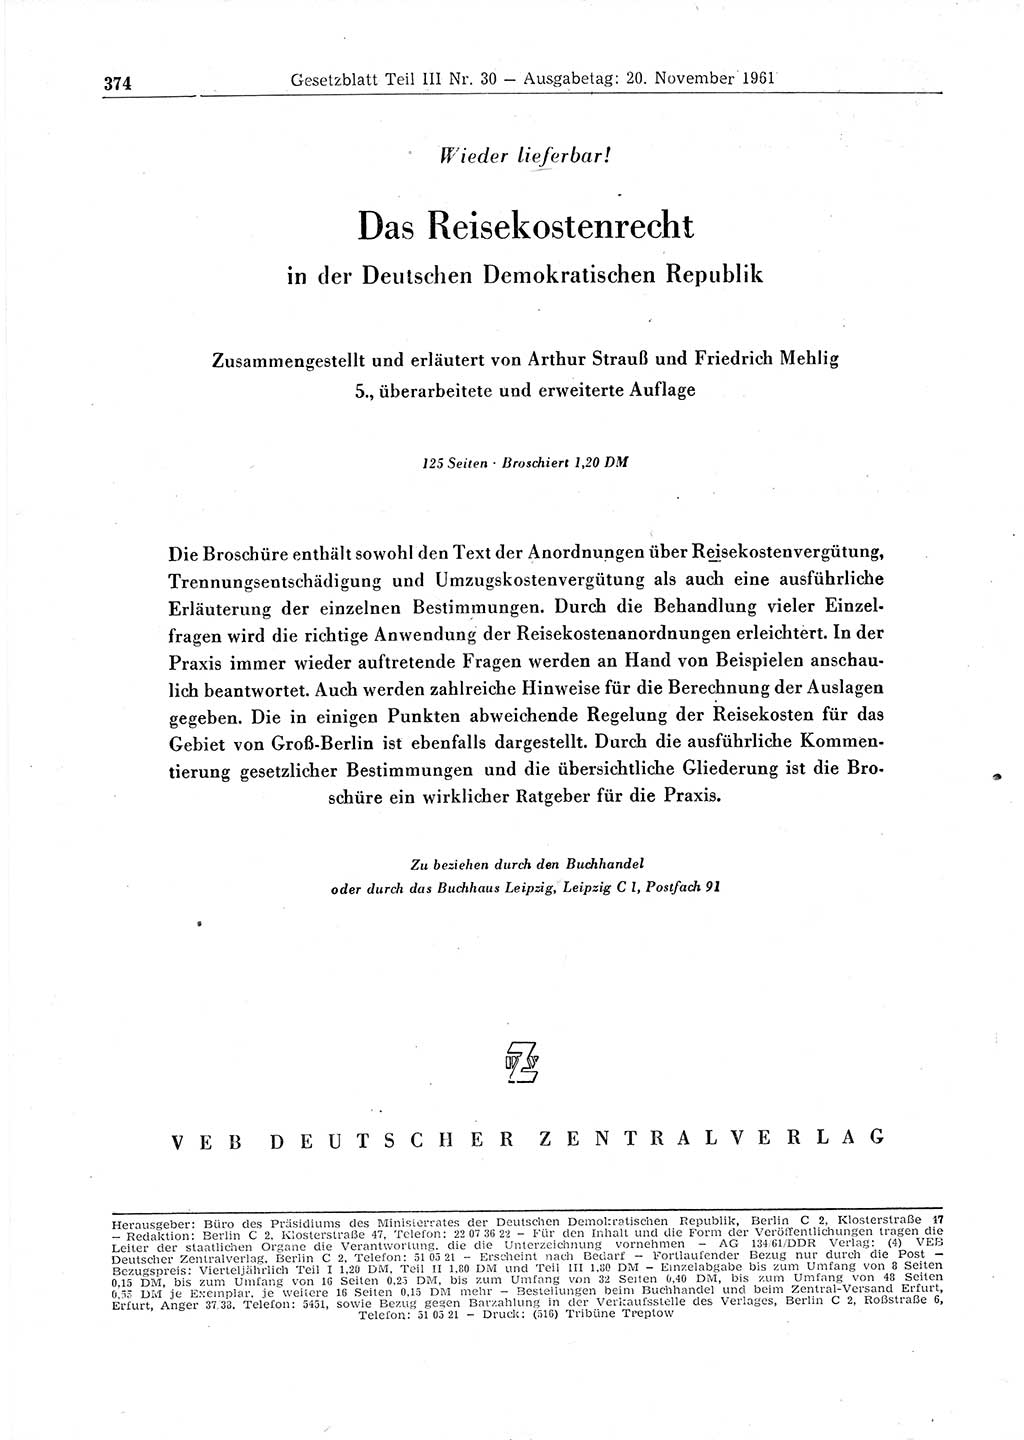 Gesetzblatt (GBl.) der Deutschen Demokratischen Republik (DDR) Teil ⅠⅠⅠ 1961, Seite 374 (GBl. DDR ⅠⅠⅠ 1961, S. 374)